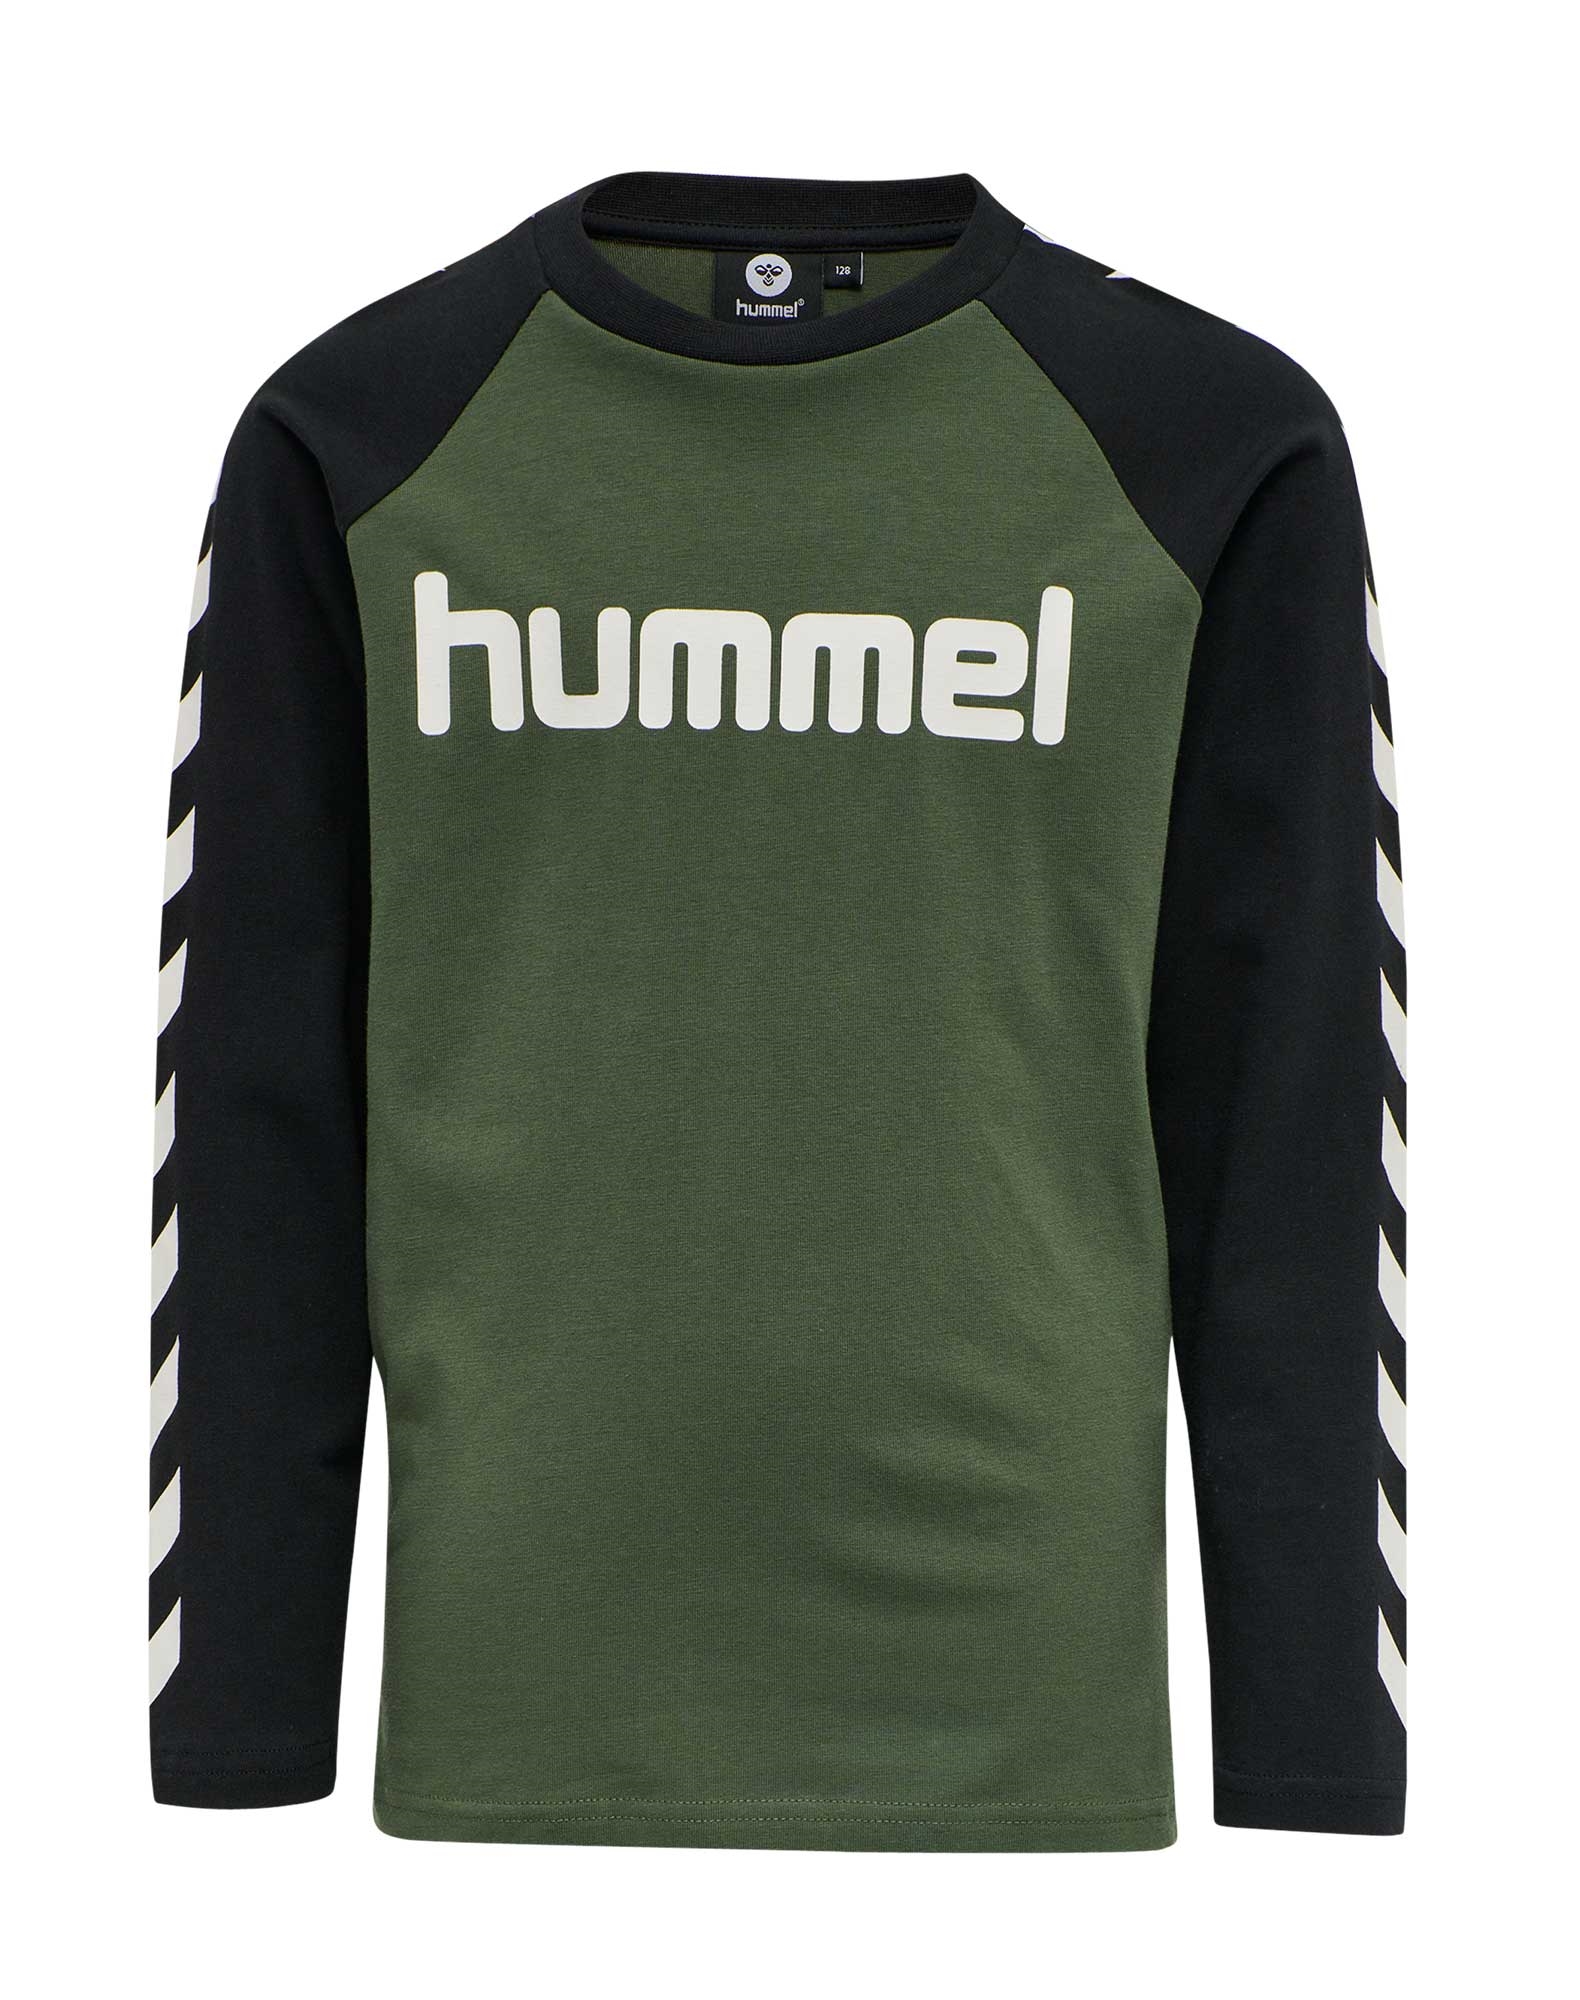 Simuler Grisling Optimistisk Køb Hummel Boys langærmet t-shirt til børn i grøn-sort